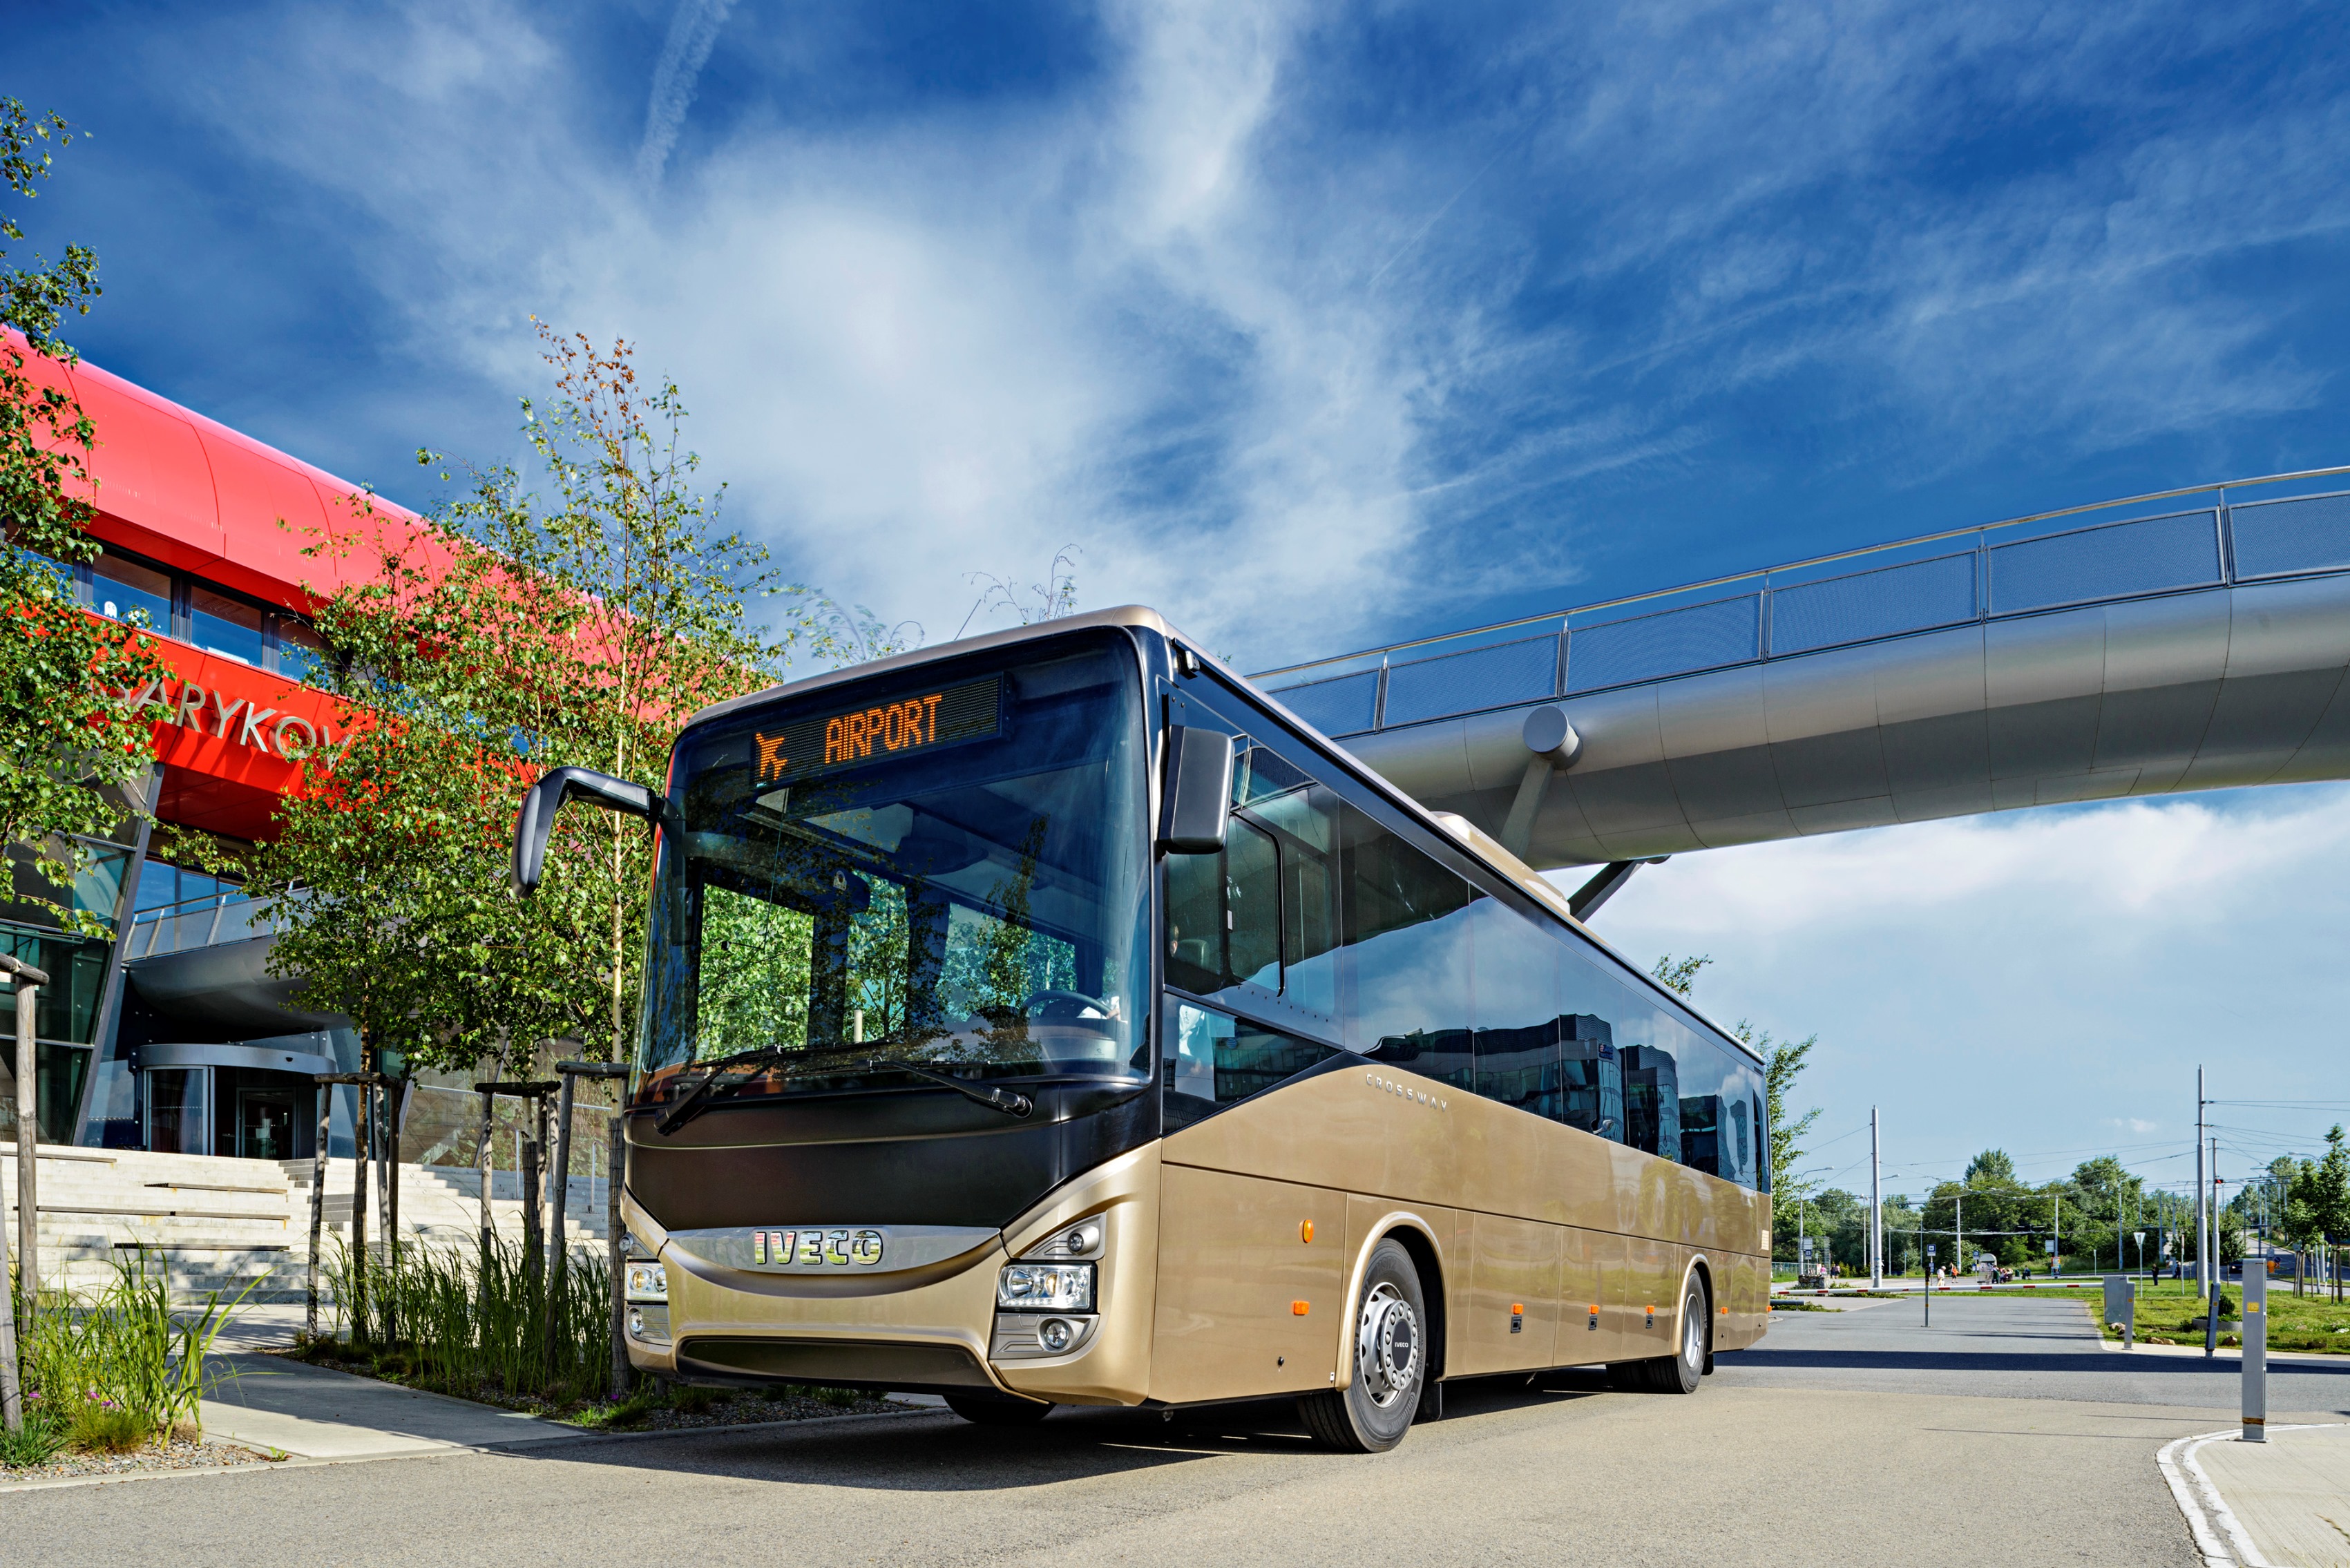  La più grande società norvegese di autolinee ordina 132 autobus al marchio Iveco Bus